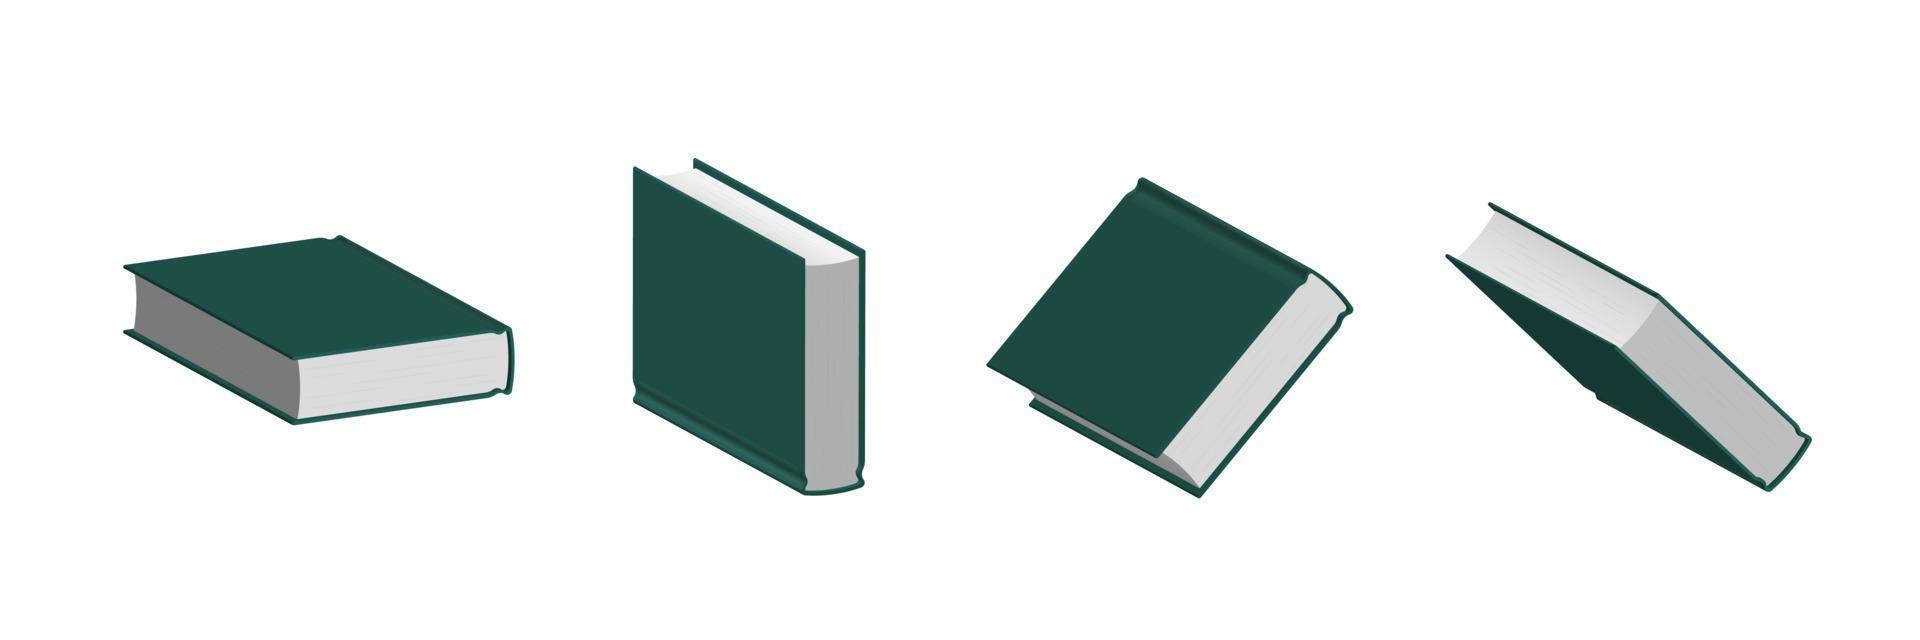 ensemble de livres vert foncé fermés dans différentes positions pour la librairie vecteur